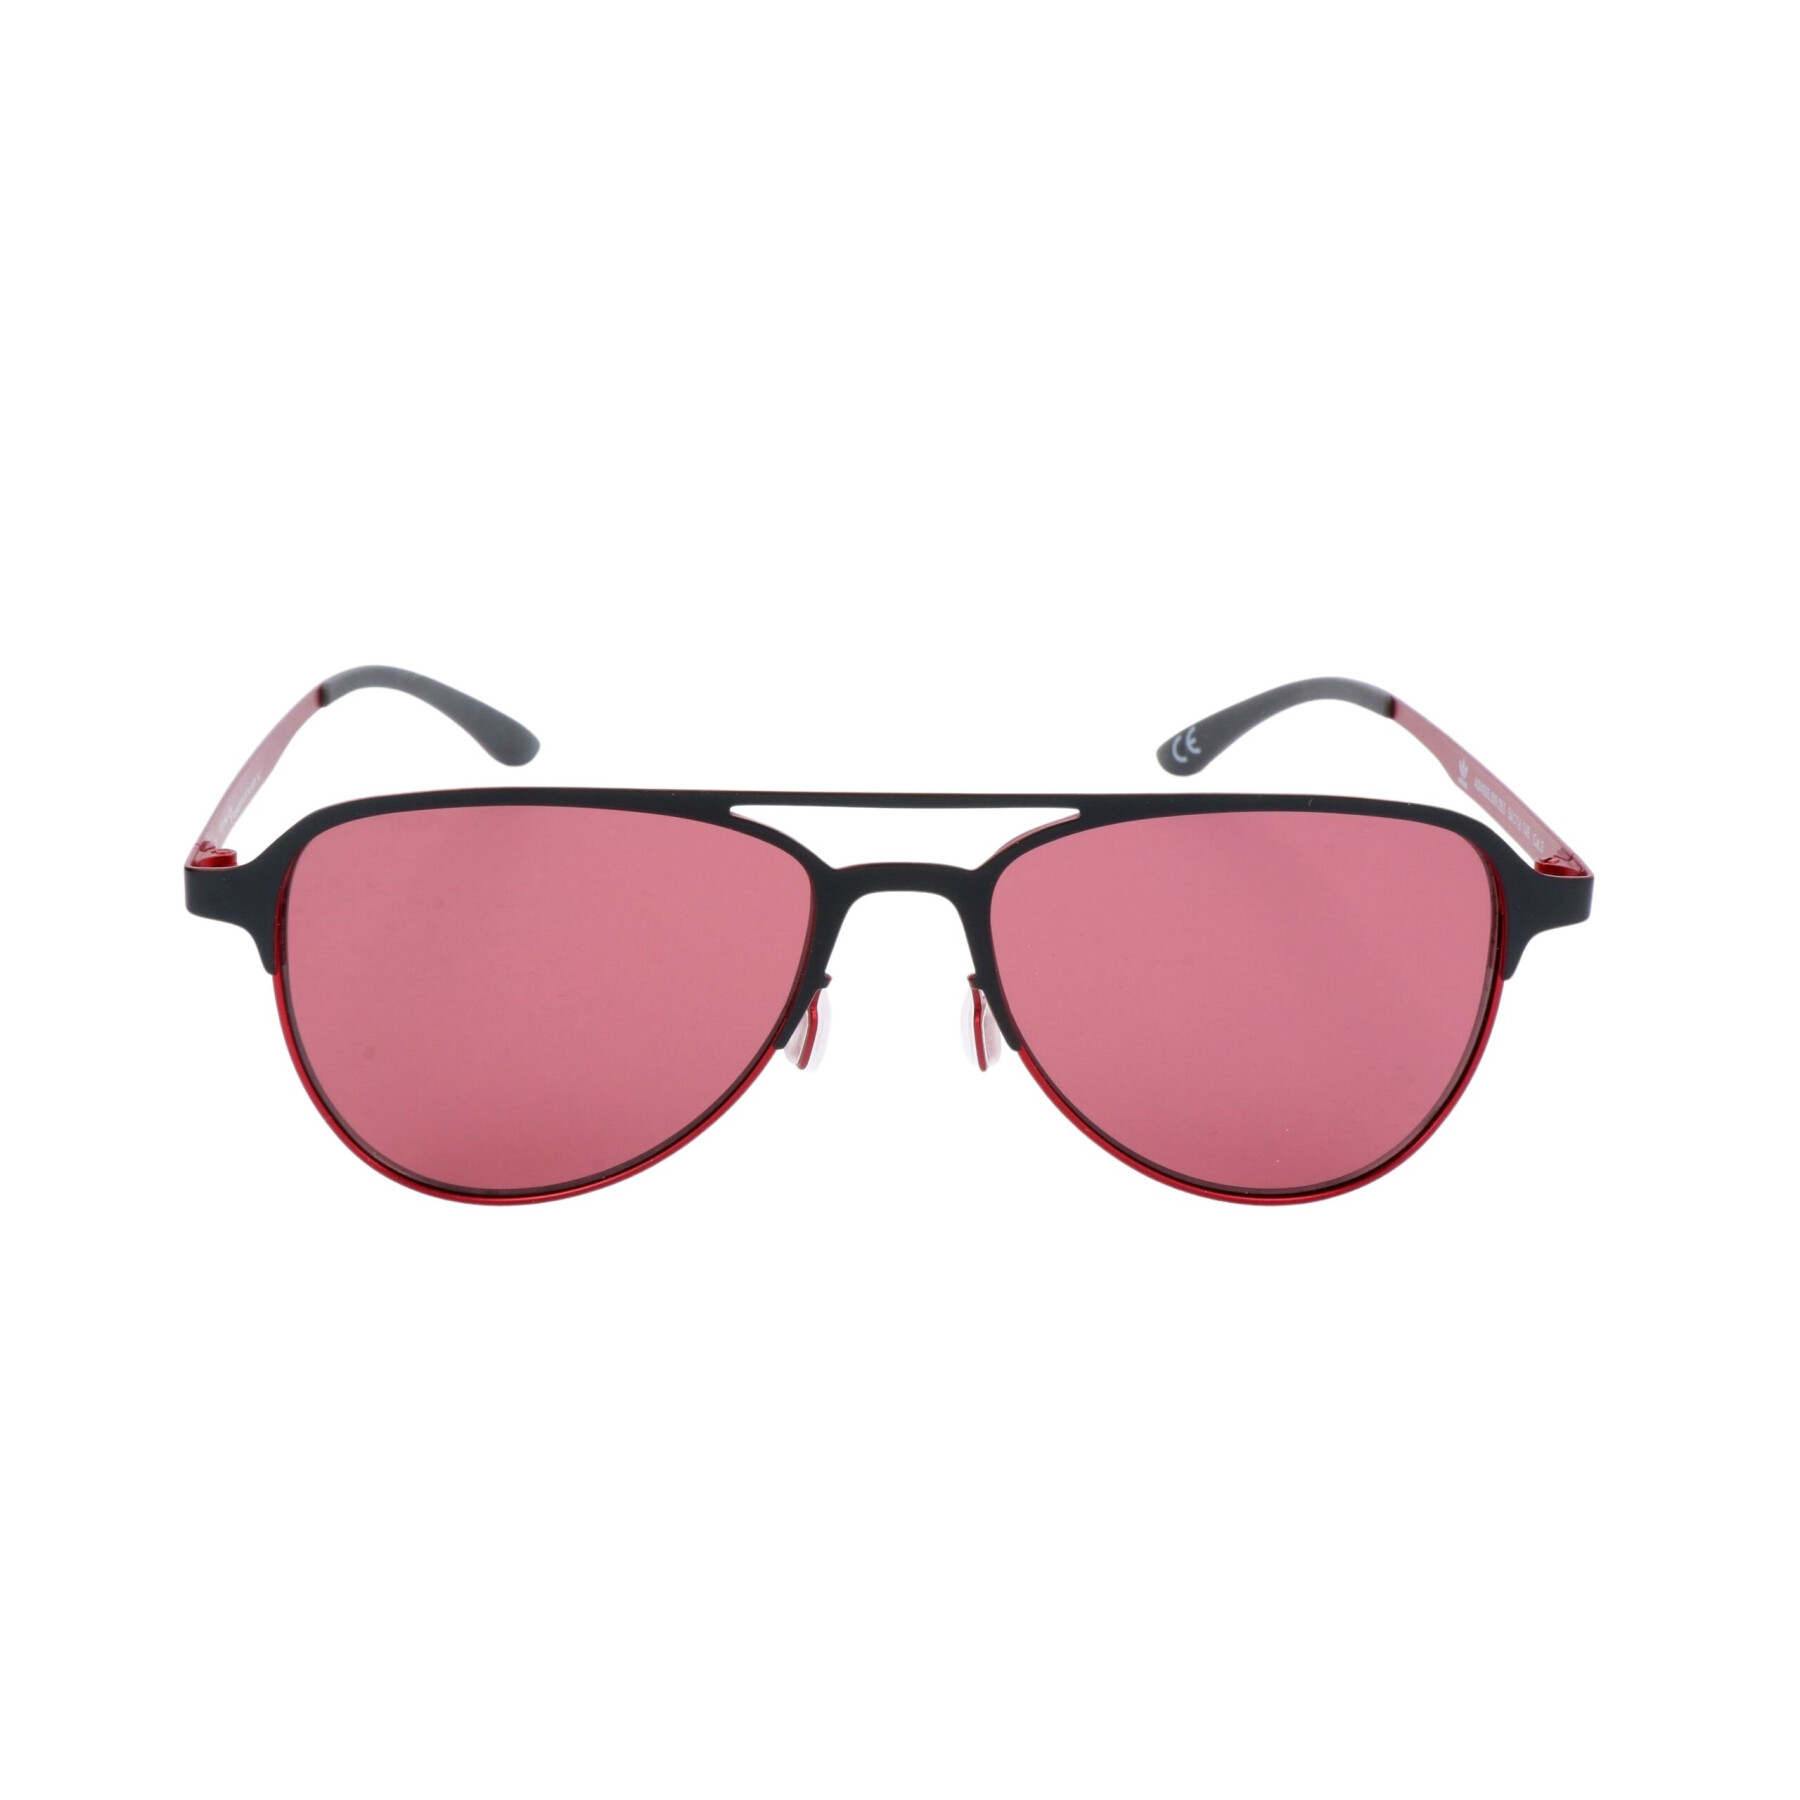 Sunglasses adidas AOM005-009053